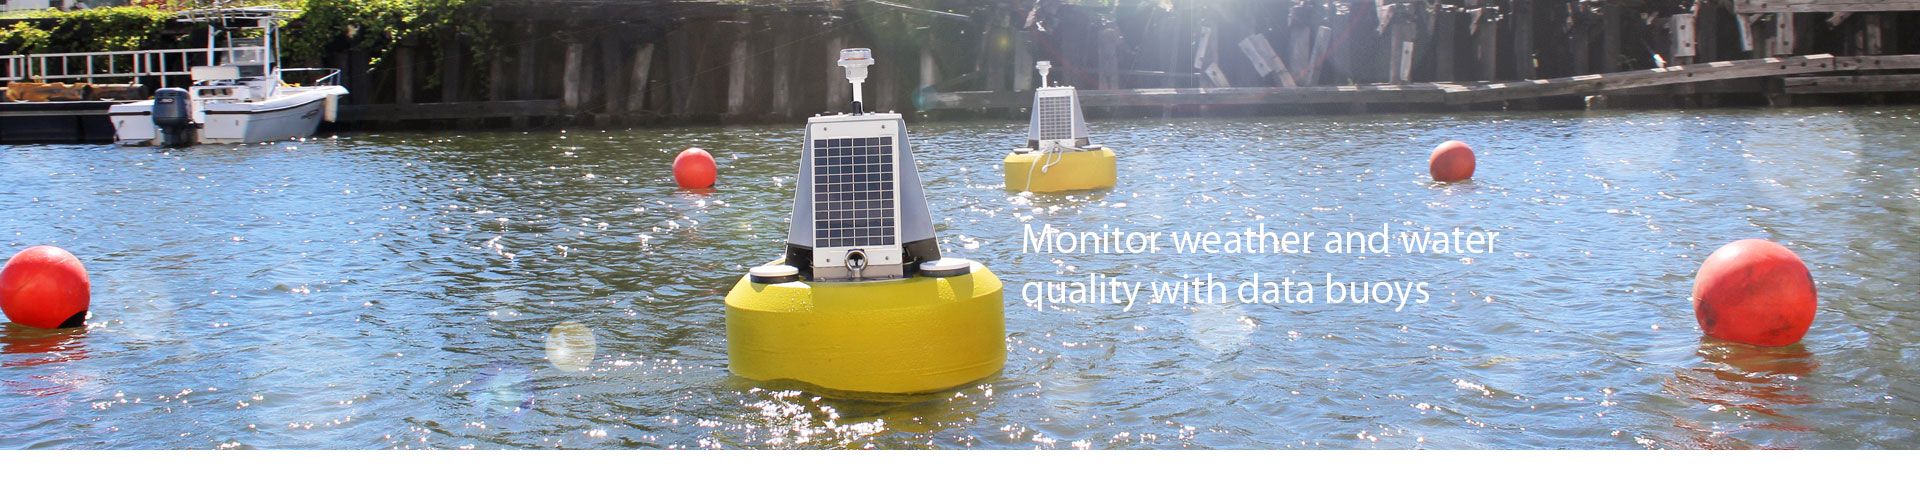 浮船式水質自動監測系統